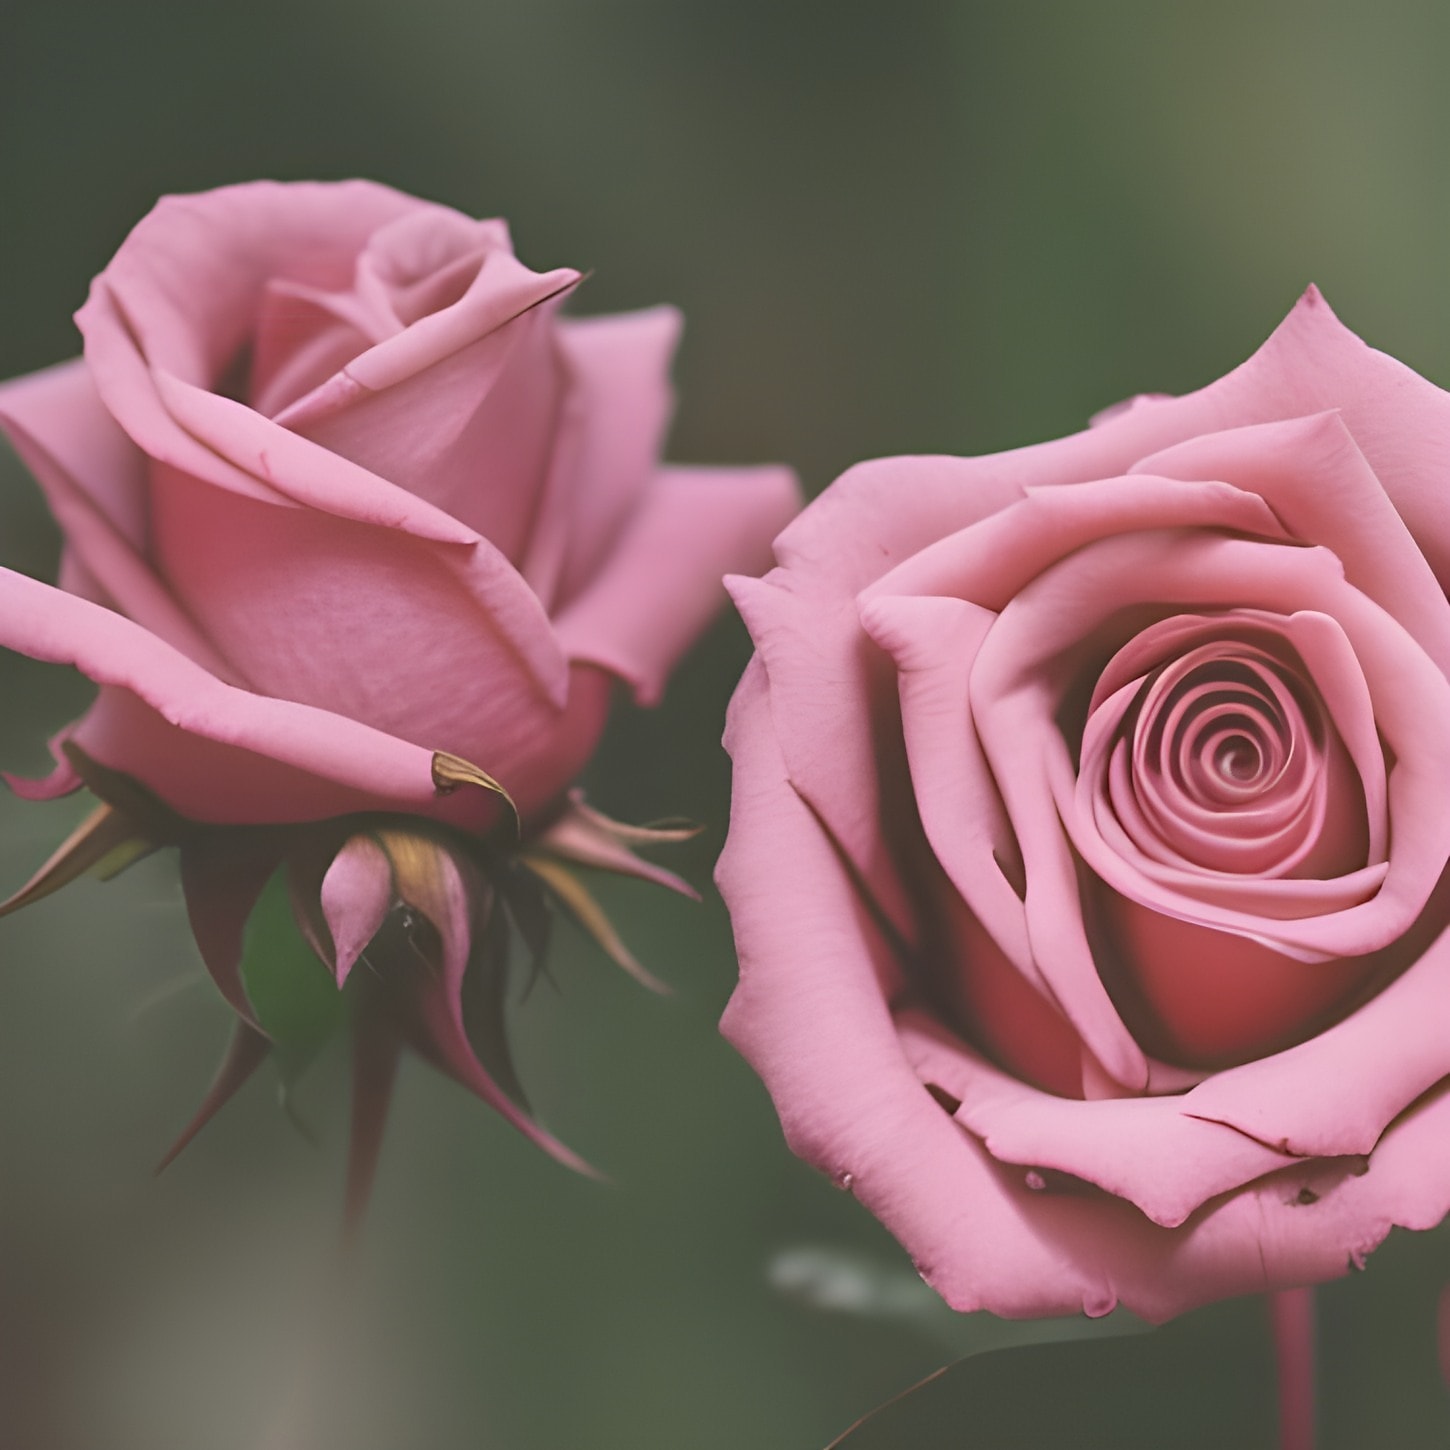 pastell, rosa, rosor, blomma trädgård, blomknopp, knopp, blomma, rosa